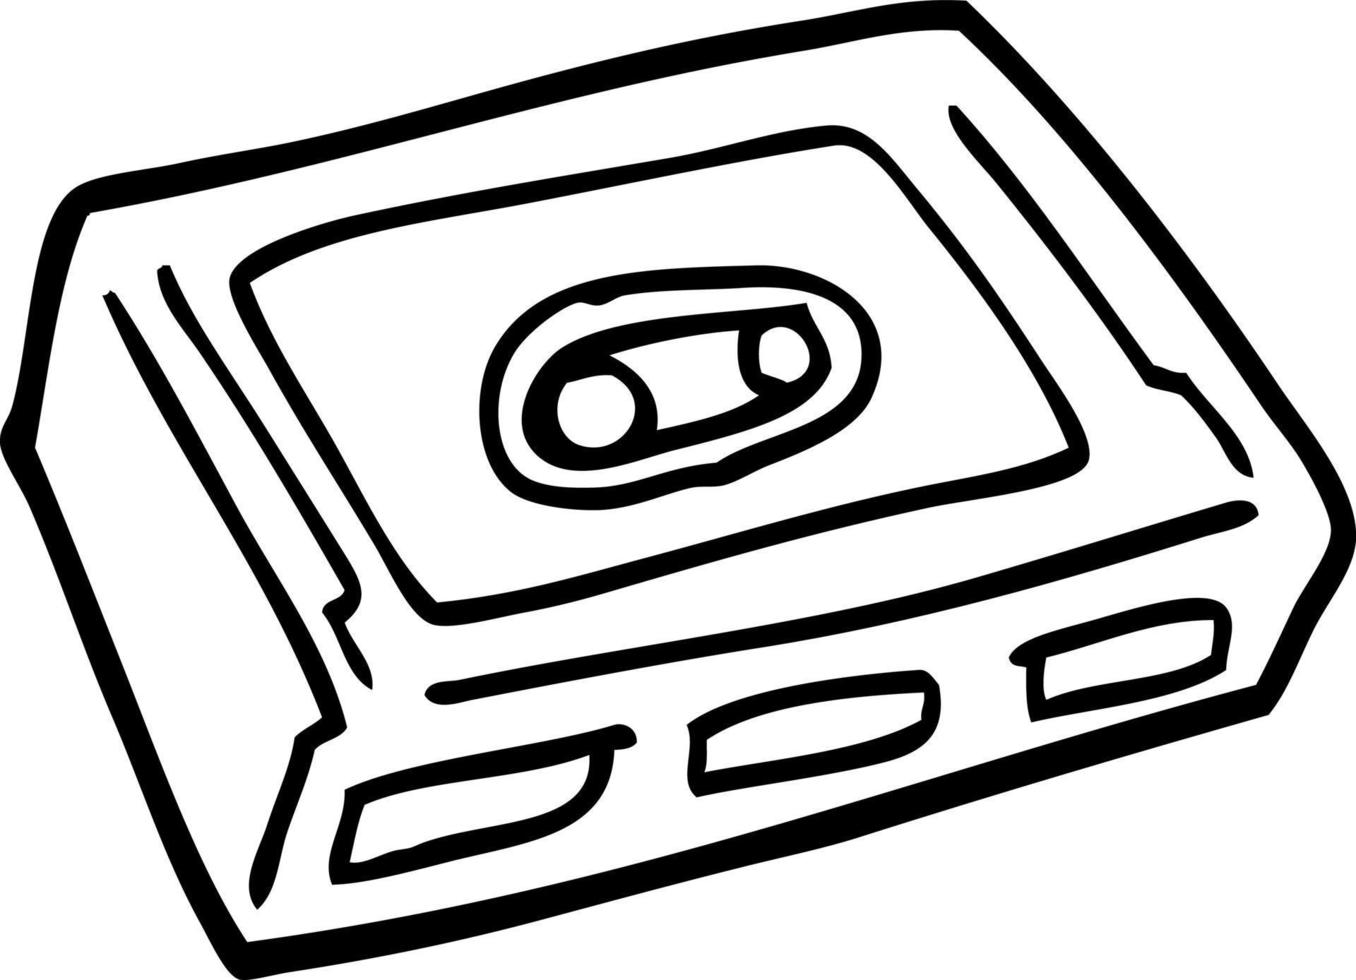 strichzeichnung cartoon kassettendeck vektor